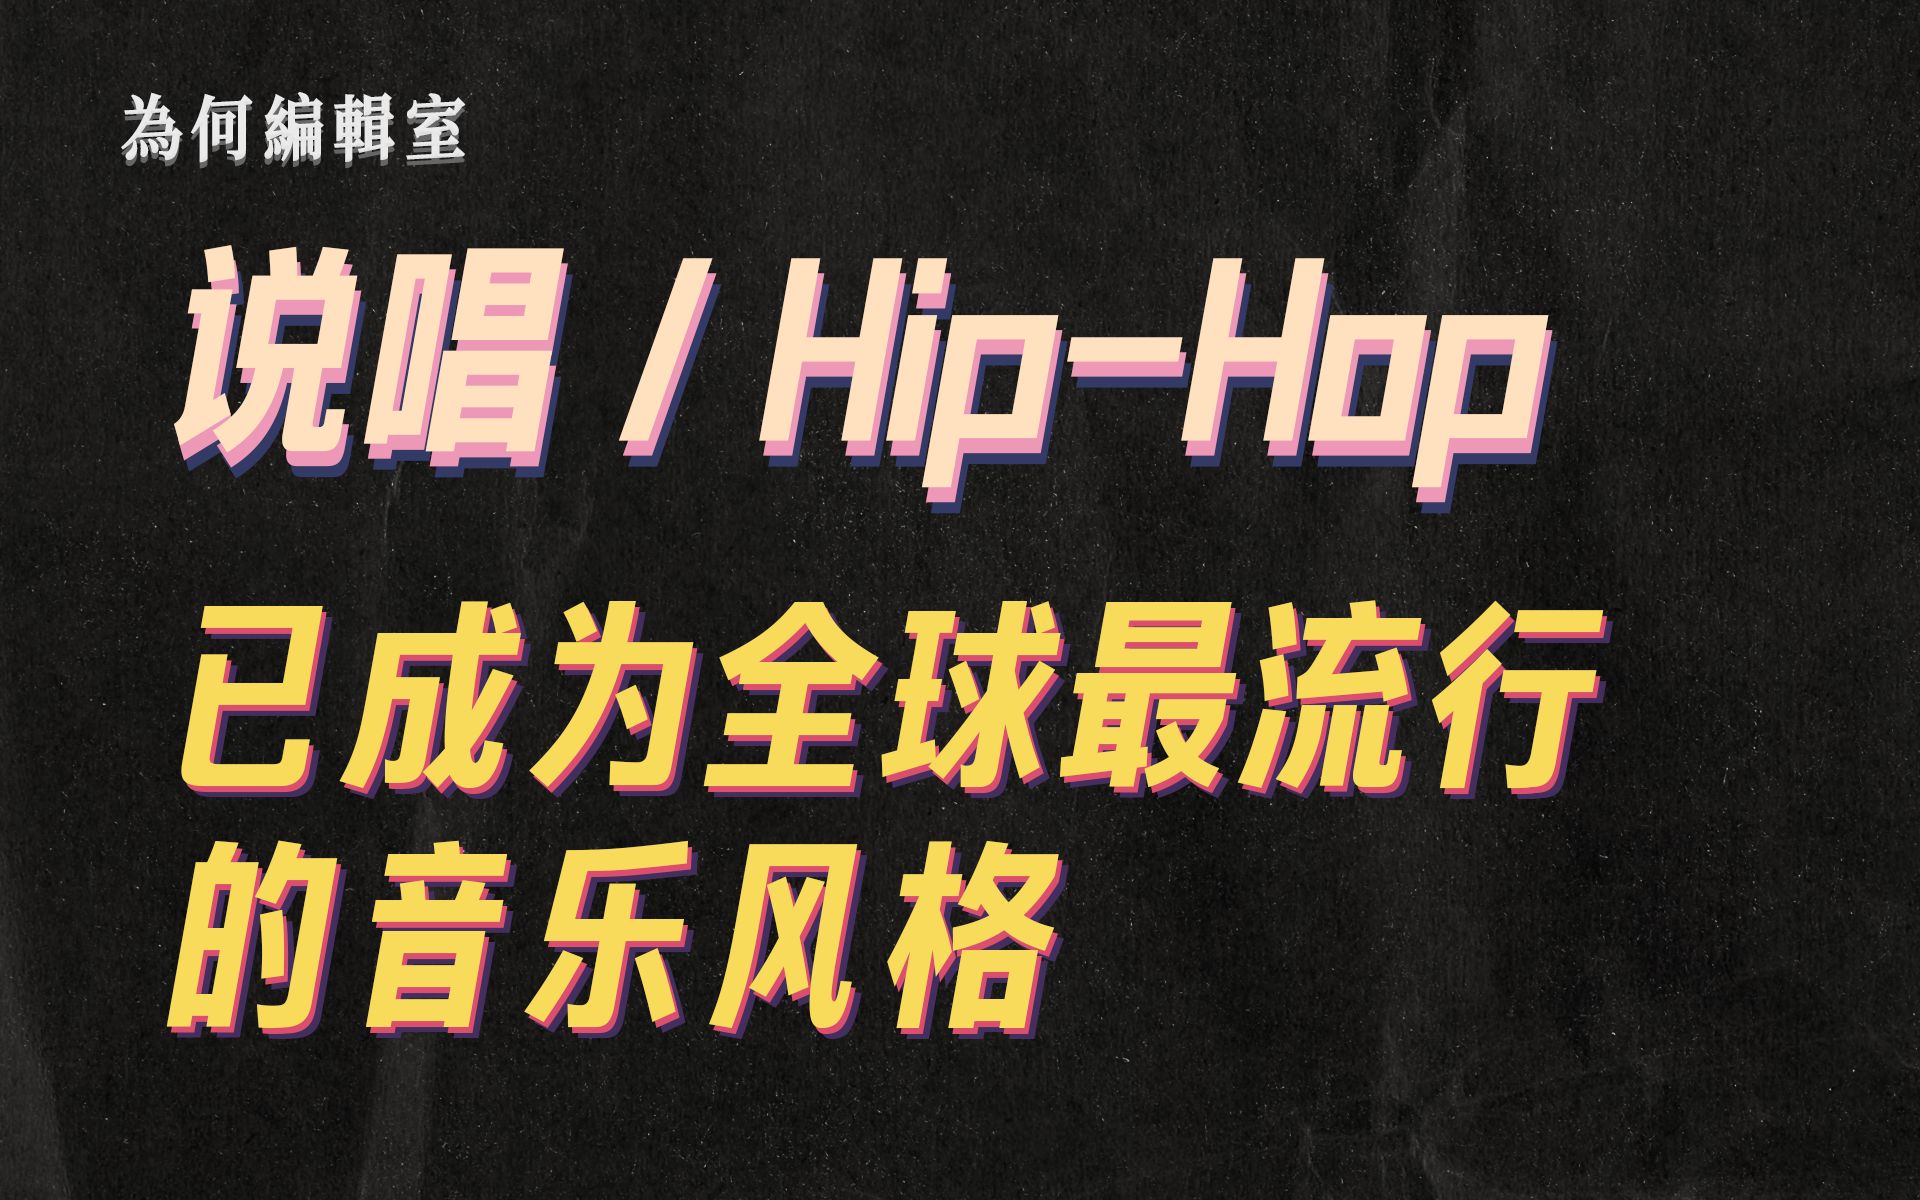 说唱/Hip-hop 是如何取代摇滚乐，成为全球最流行的音乐风格的